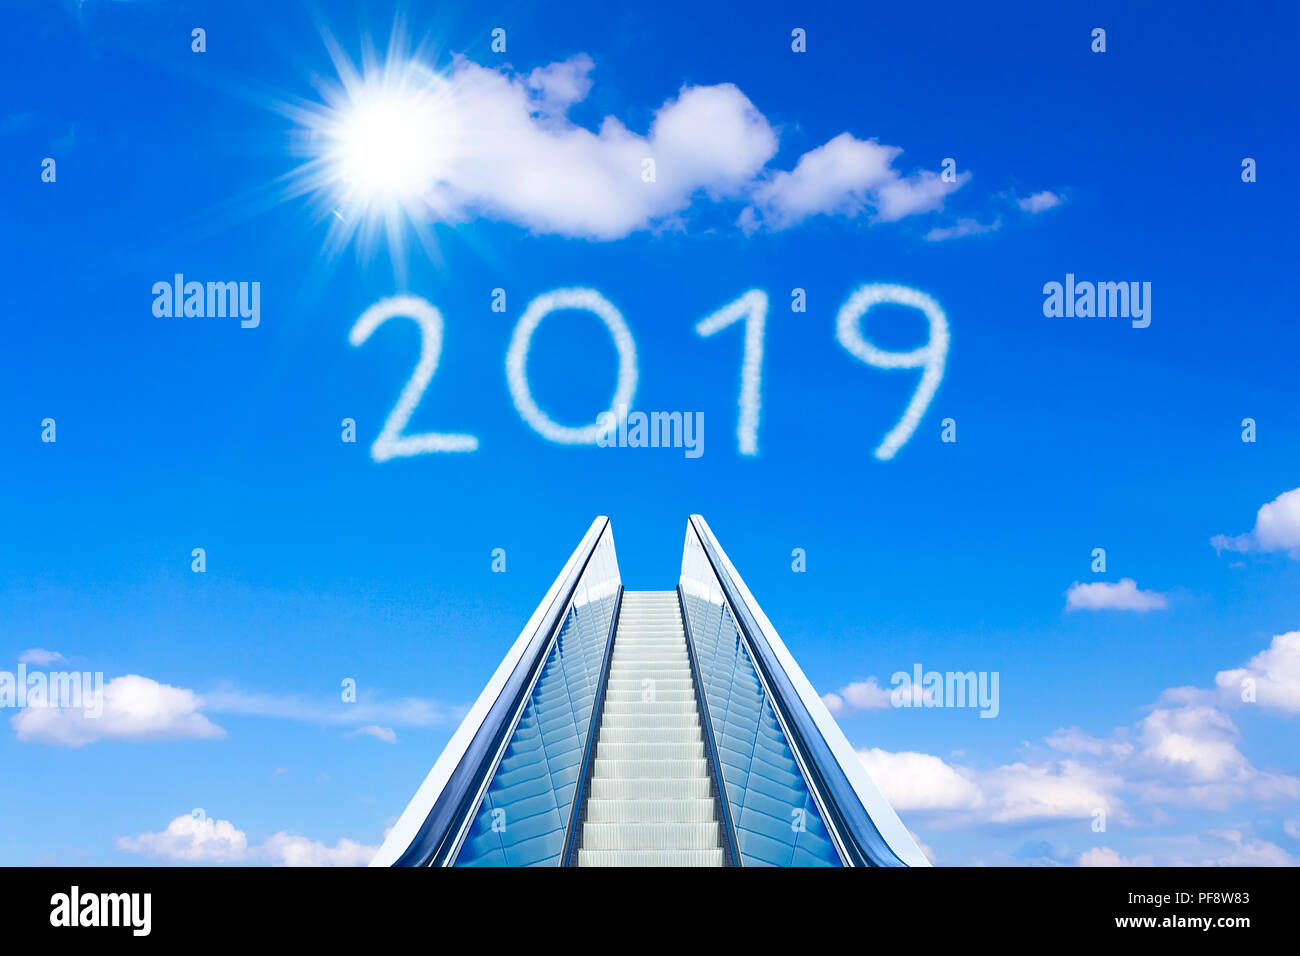 Raggiungendo il nuovo anno 2019 su una scala mobile o escalator in un cielo blu chiaro. Foto di concetto per il successo e il raggiungimento di obiettivi su una superficie liscia e facile Foto Stock